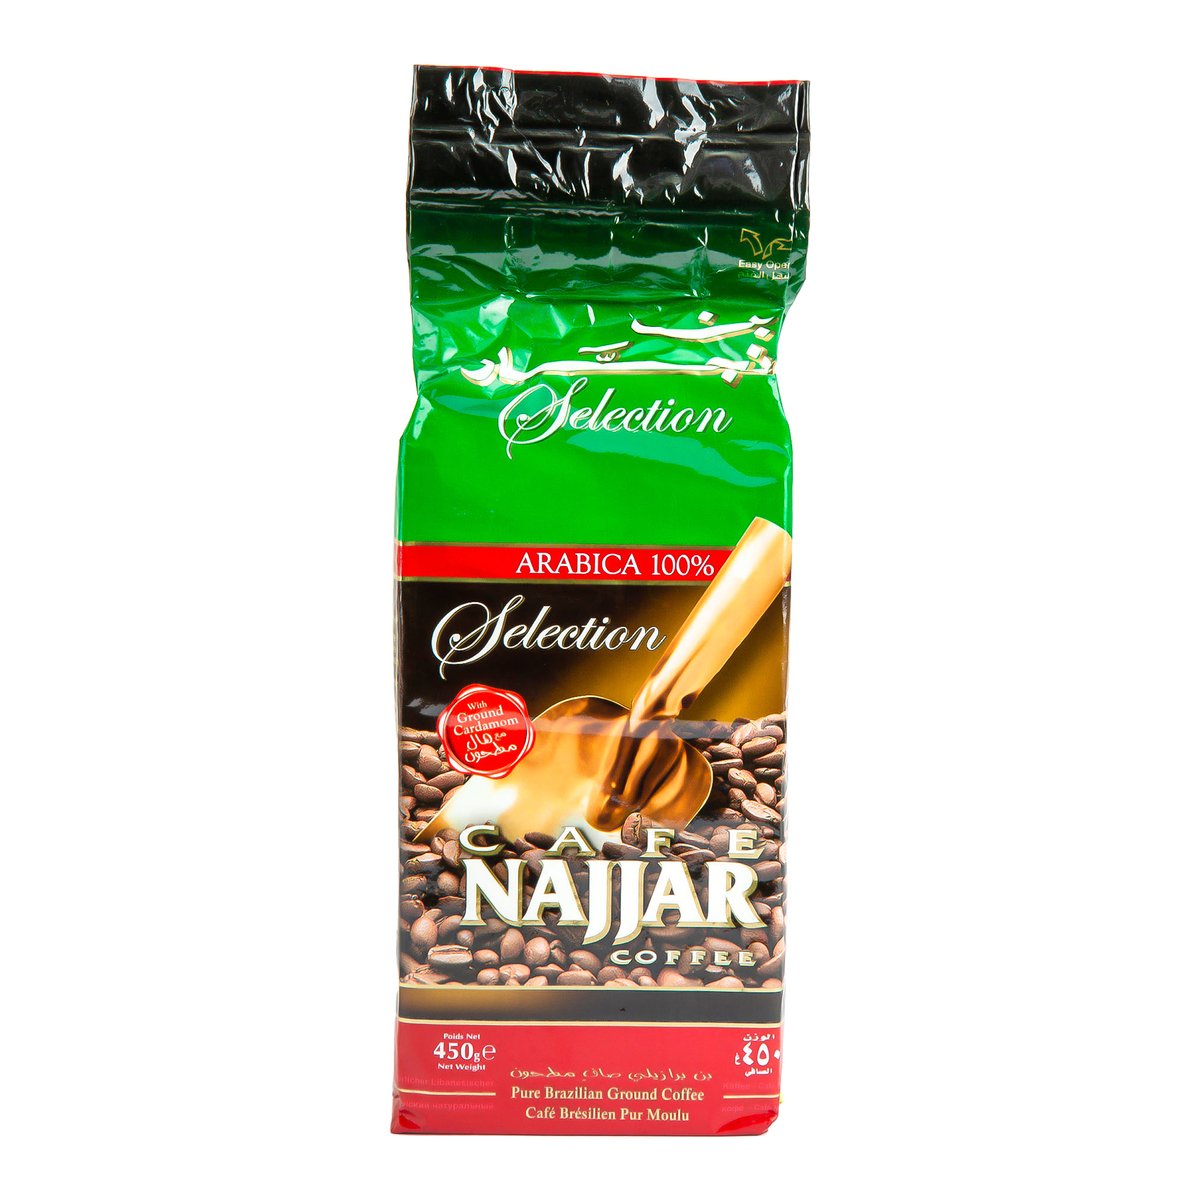 Najjar Selection Coffee Cardamom 450 g